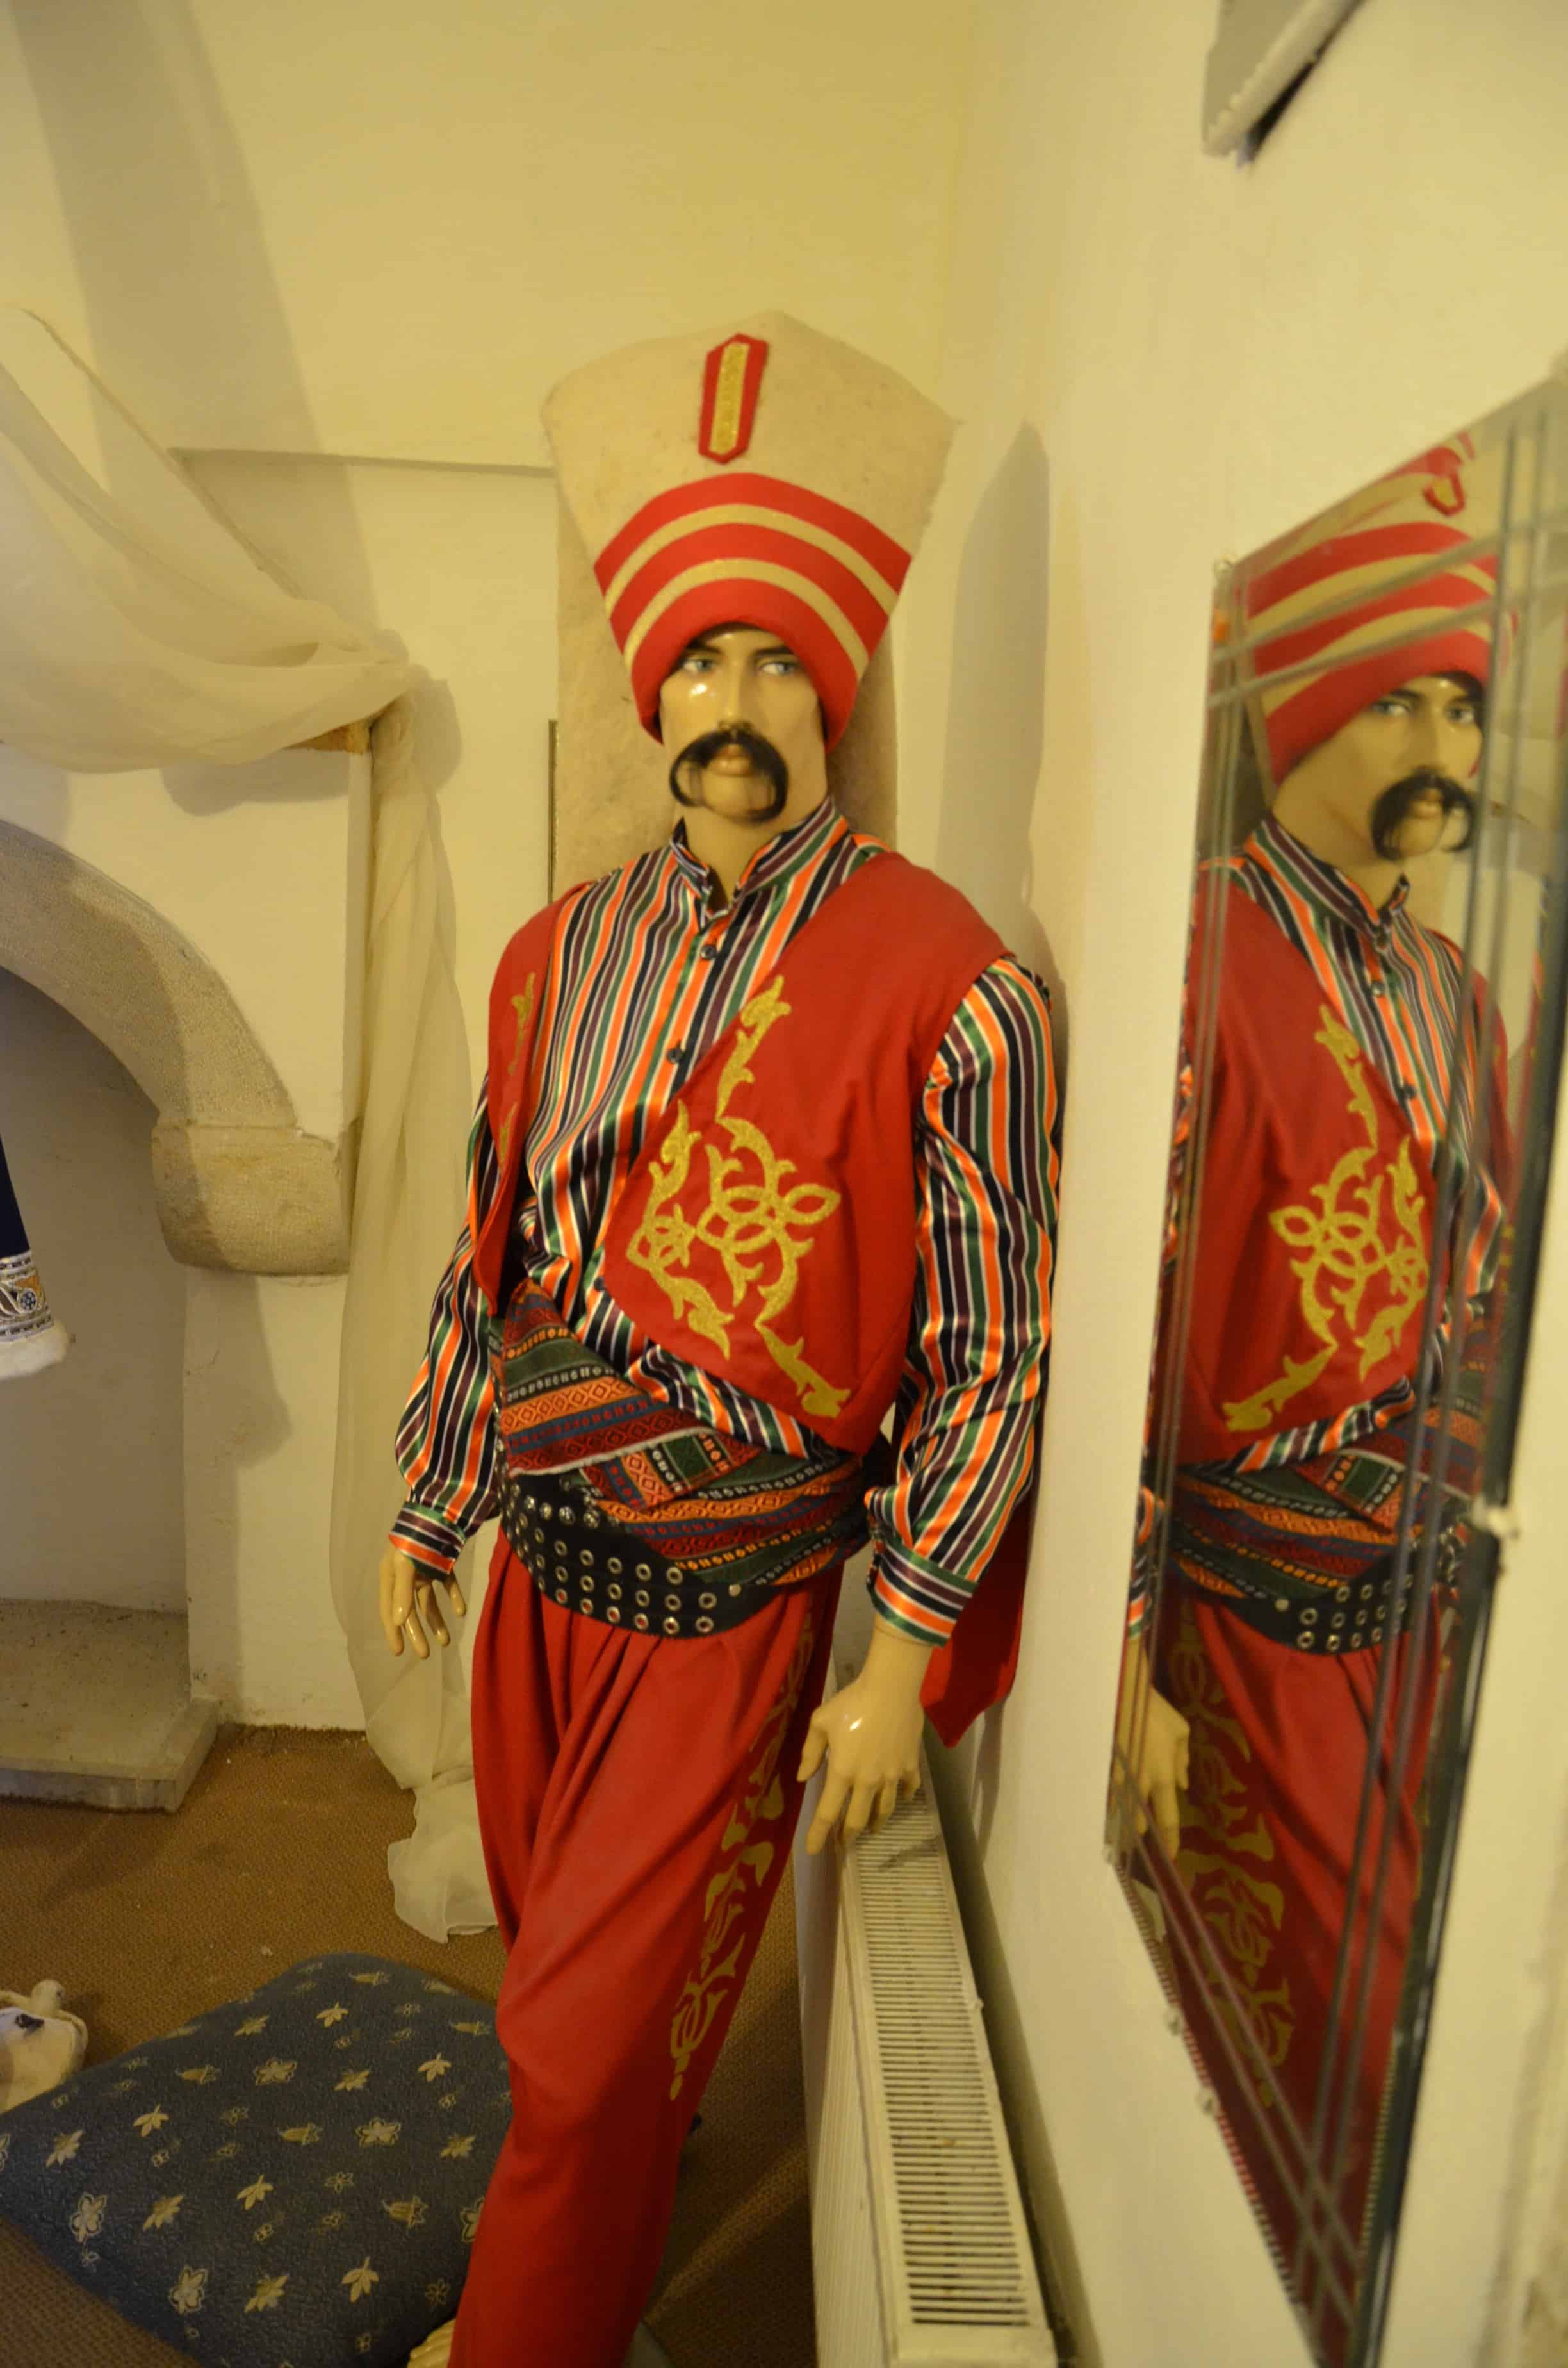 Cinci Hanı in Safranbolu, Turkey